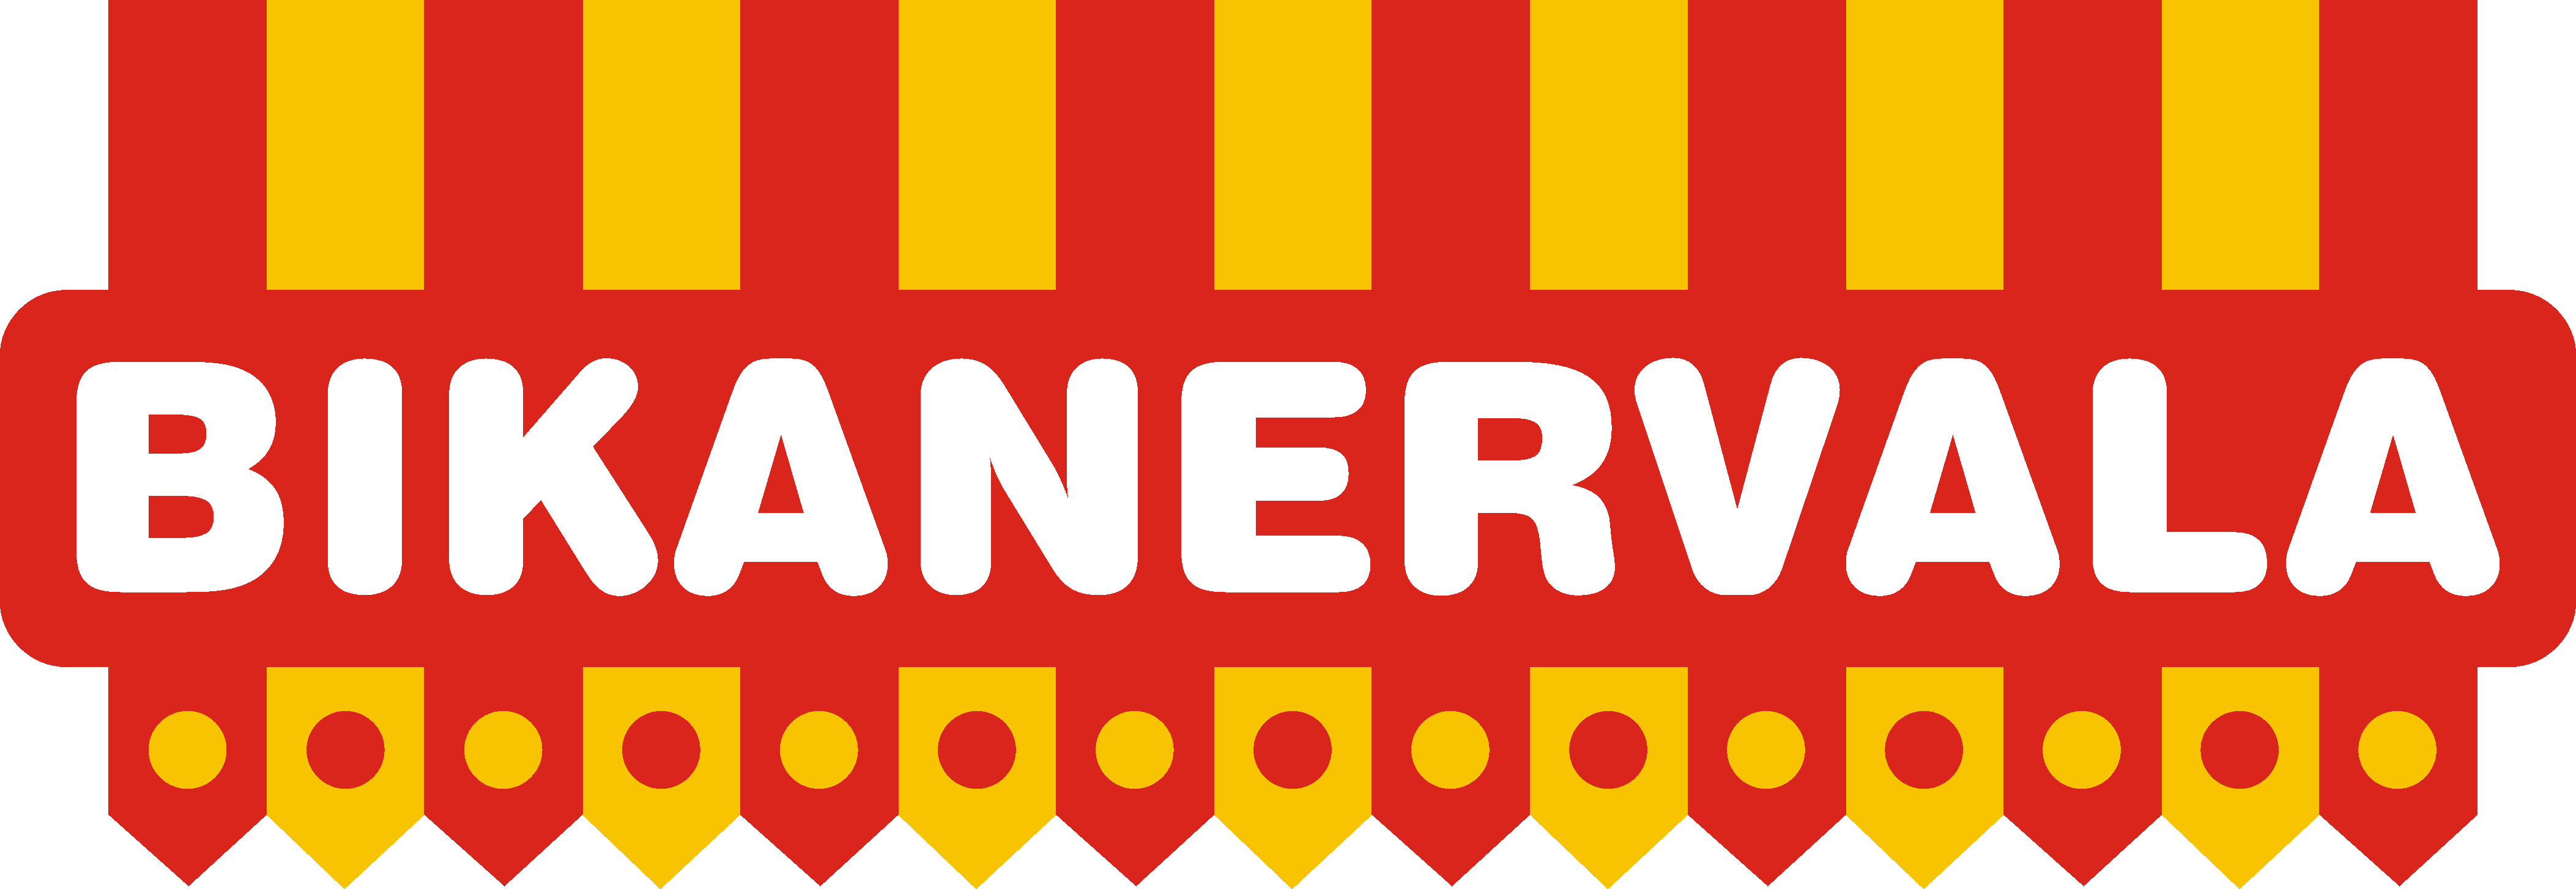 Bikanervala_logo